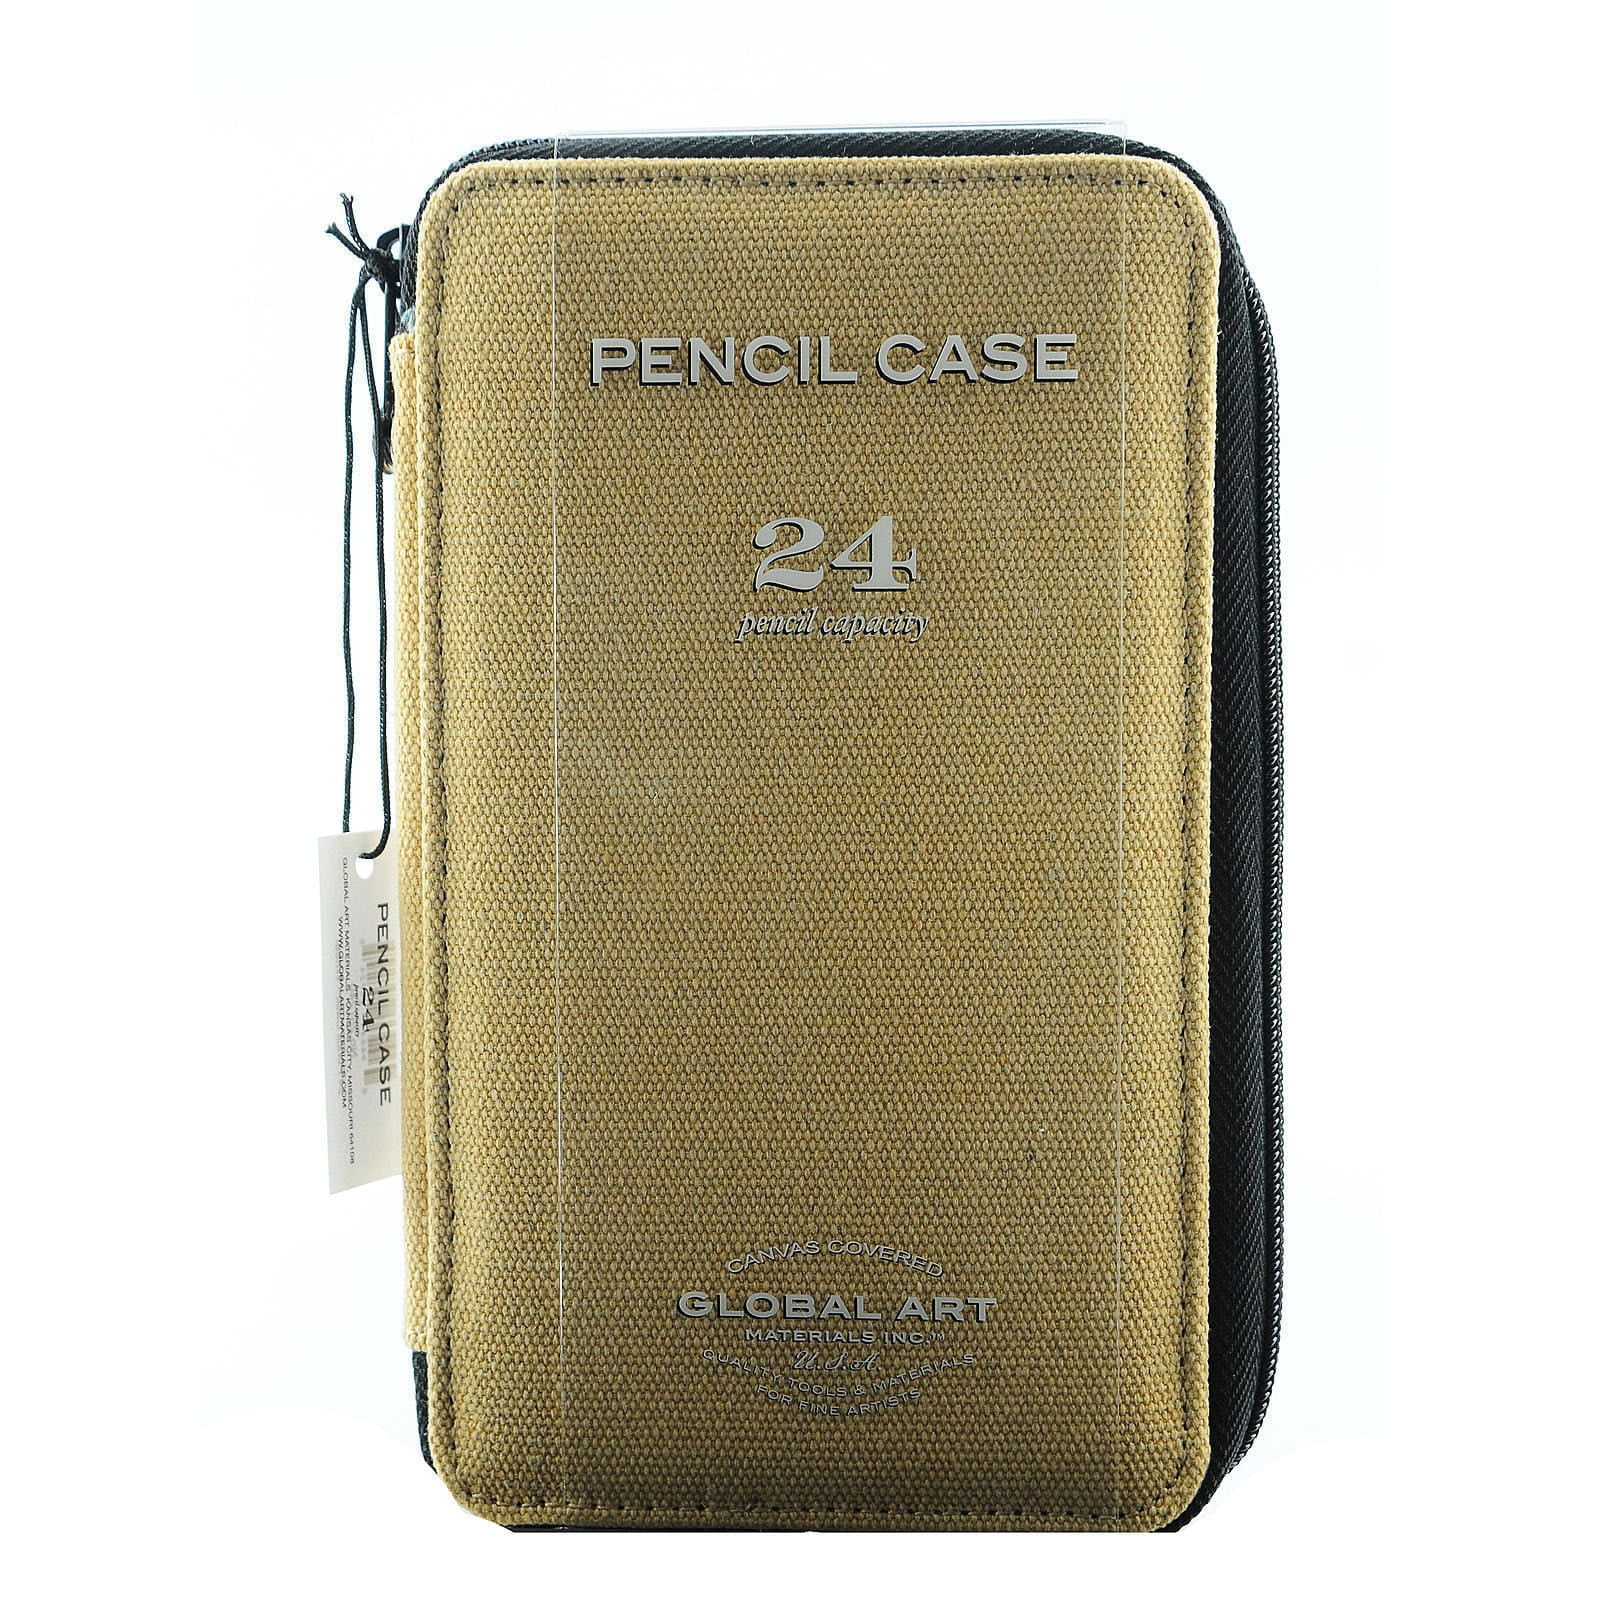 Tran Deluxe 120 Pencil Case Black